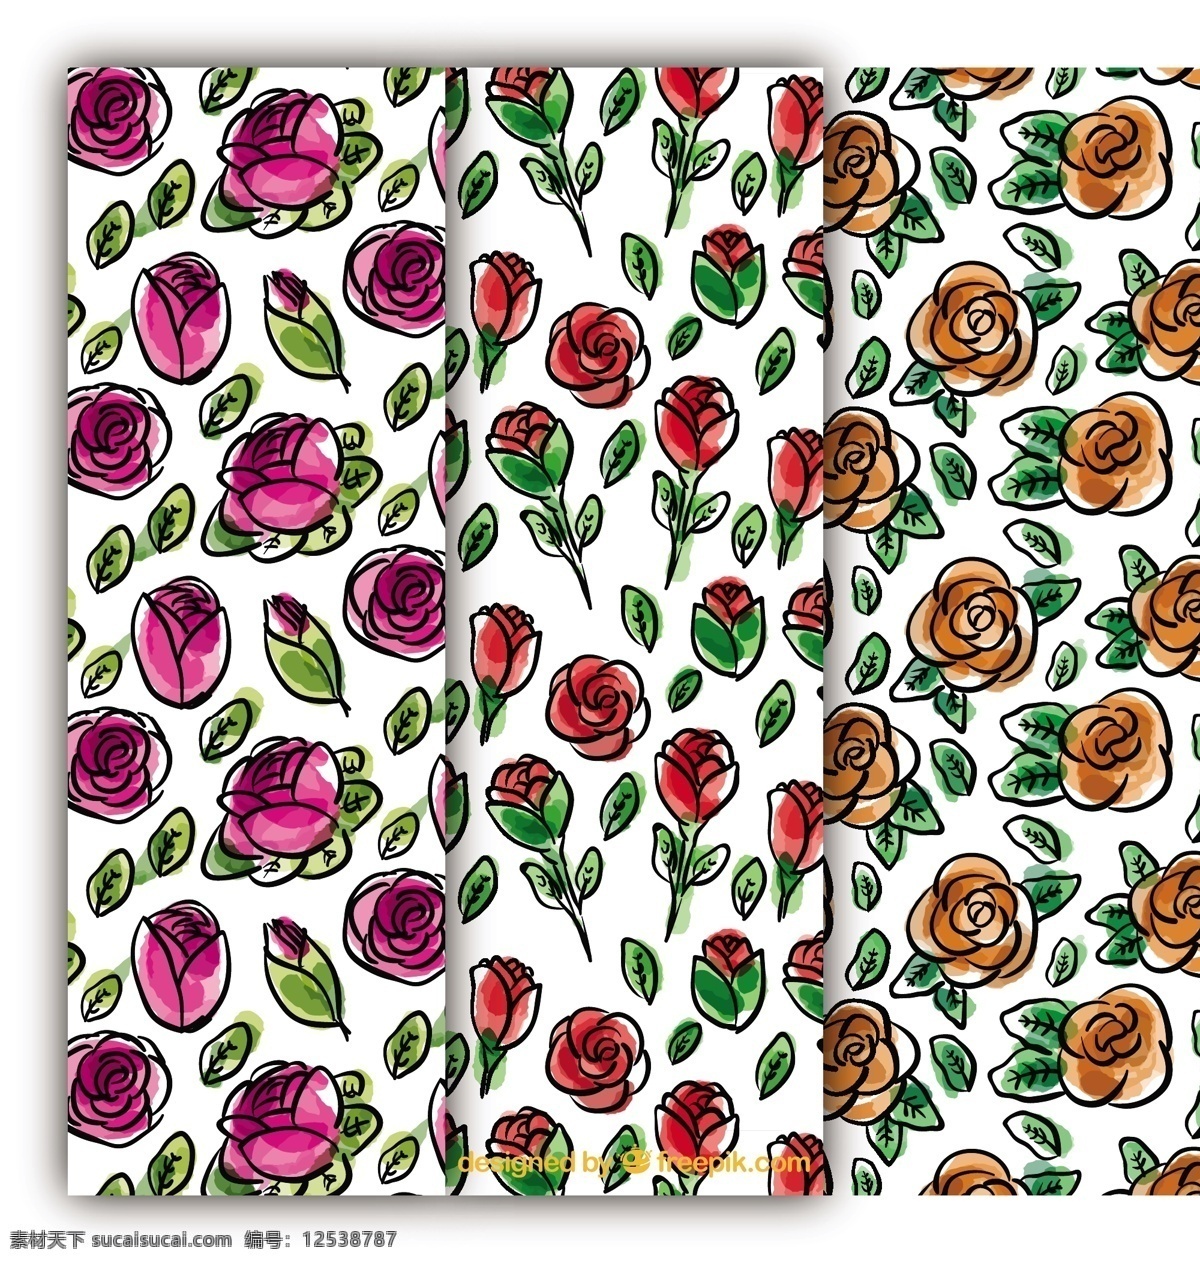 水彩玫瑰图案 背景 图案 花卉 水彩 手 自然 花卉背景 手绘 水彩花卉 玫瑰 花卉图案 水彩背景 春天 树叶 植物